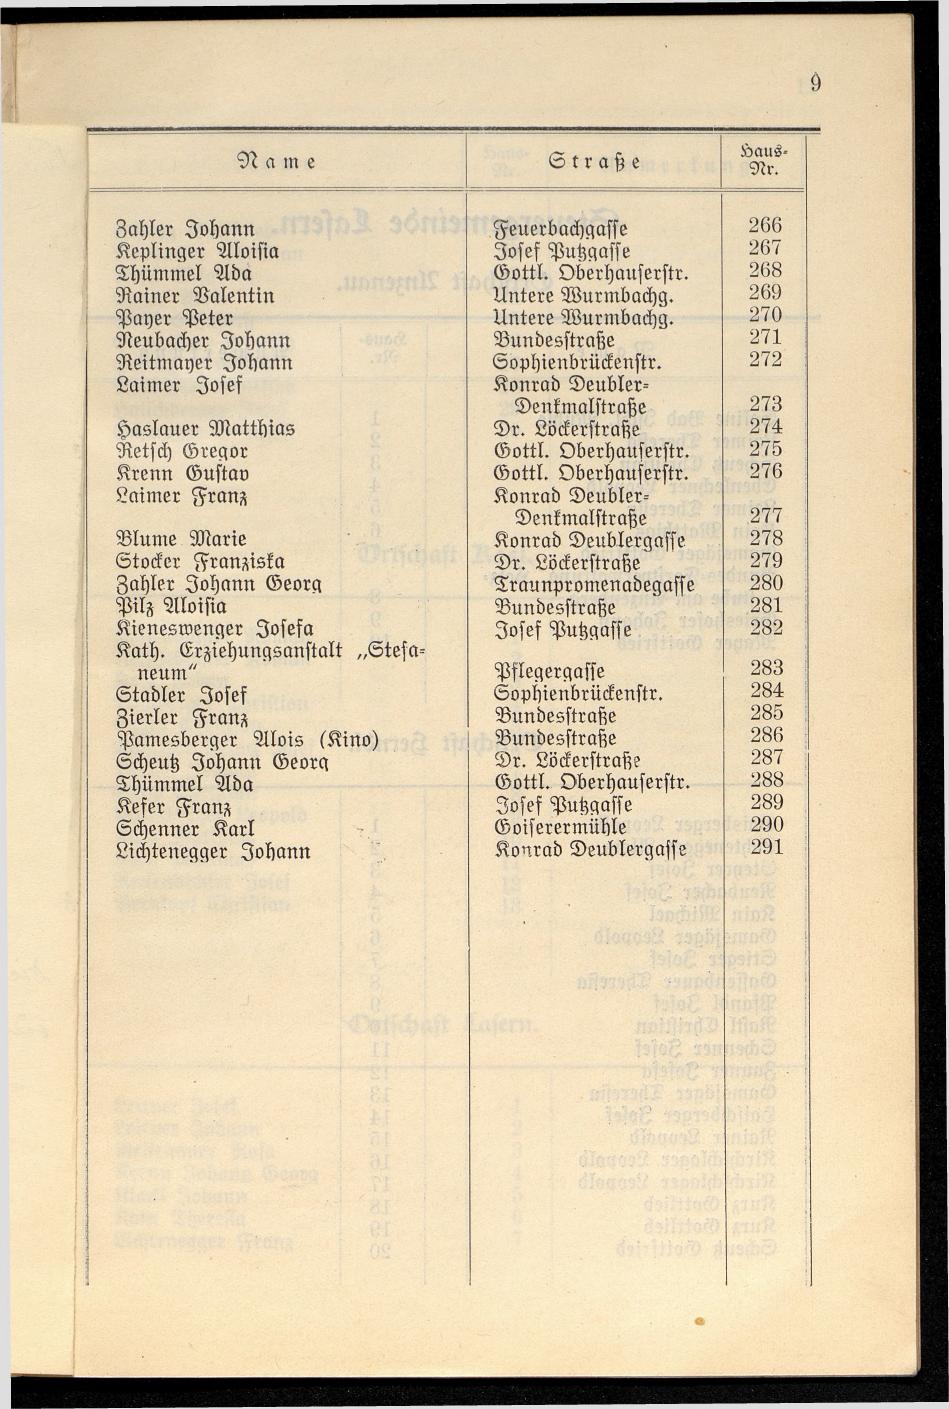 Häuser-Verzeichnis der Gemeinde Goisern nach dem Stande von Juli 1927 - Seite 16